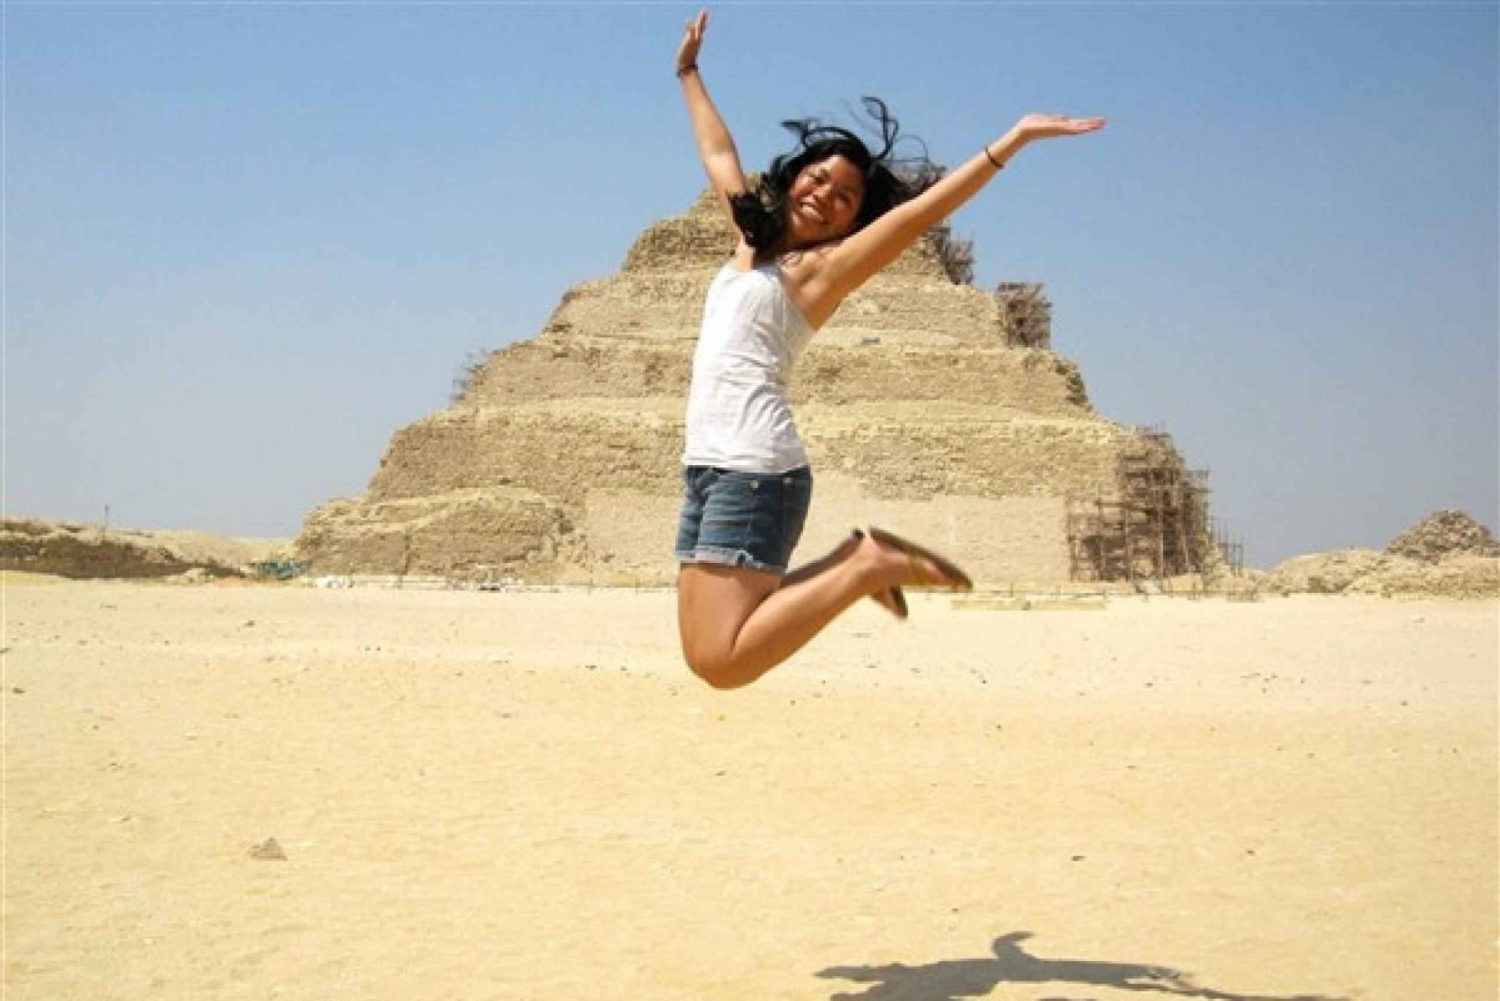 Kairo: Pyramider, Sakkara og Memphis - privat tur med lunsj